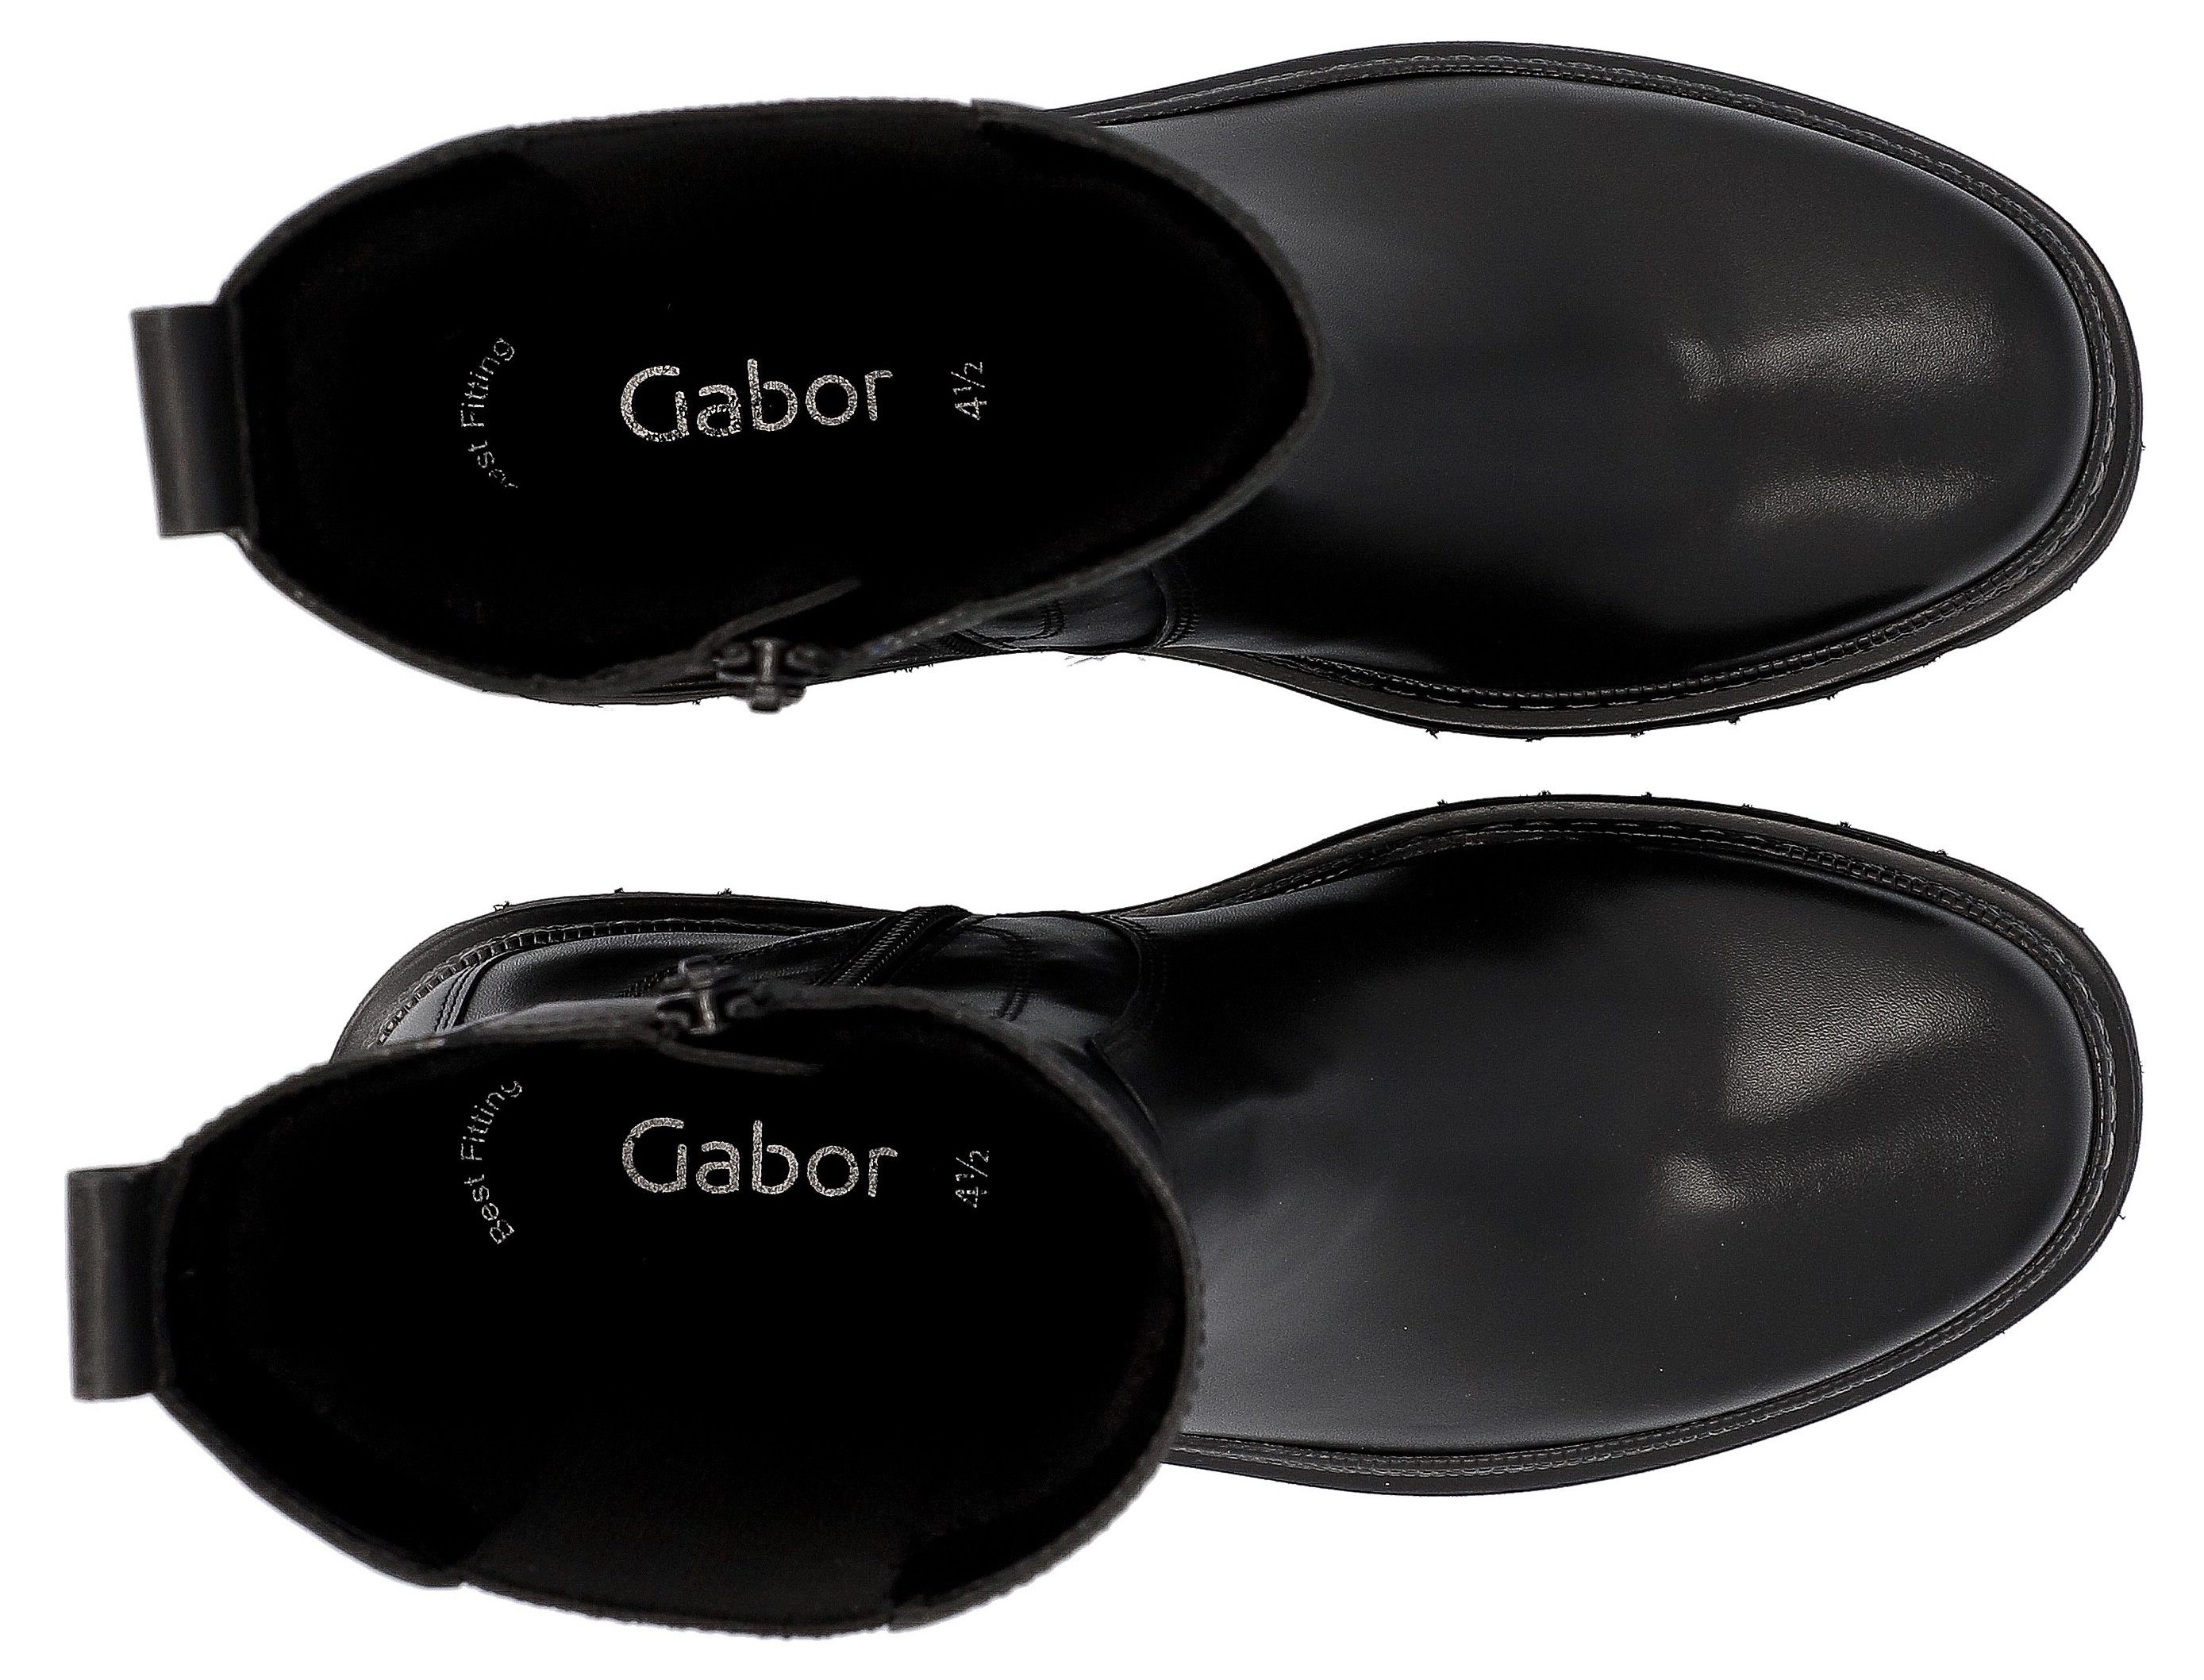 Gabor Chelseaboots schwarz-weiß Fitting Ausstattung mit Best